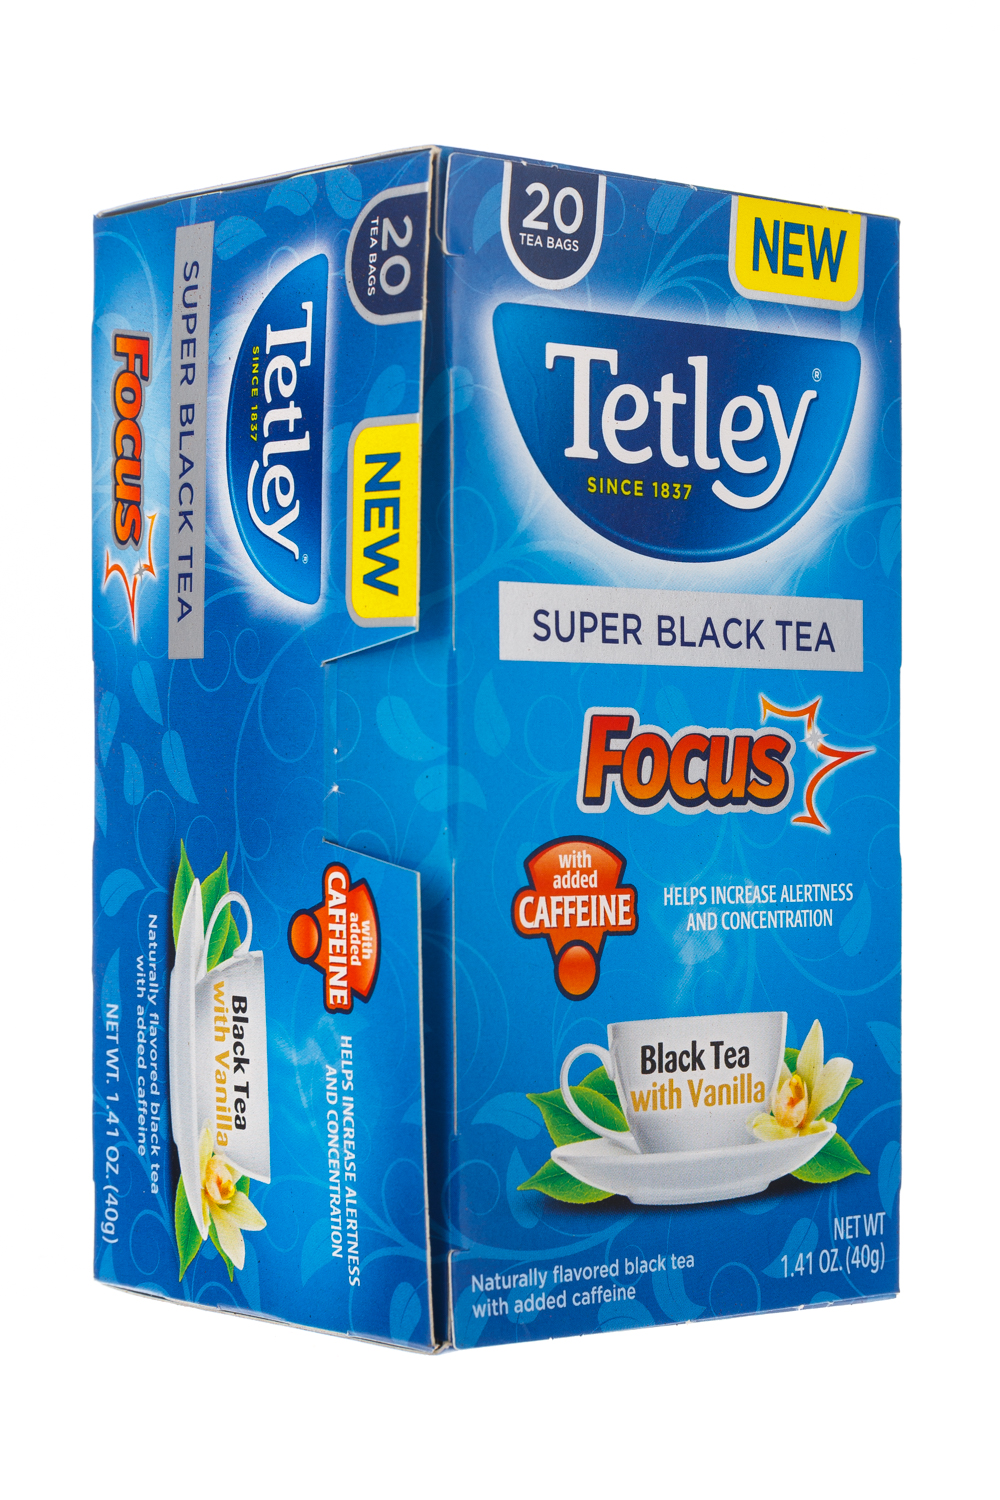 Super Black Tea: Focus